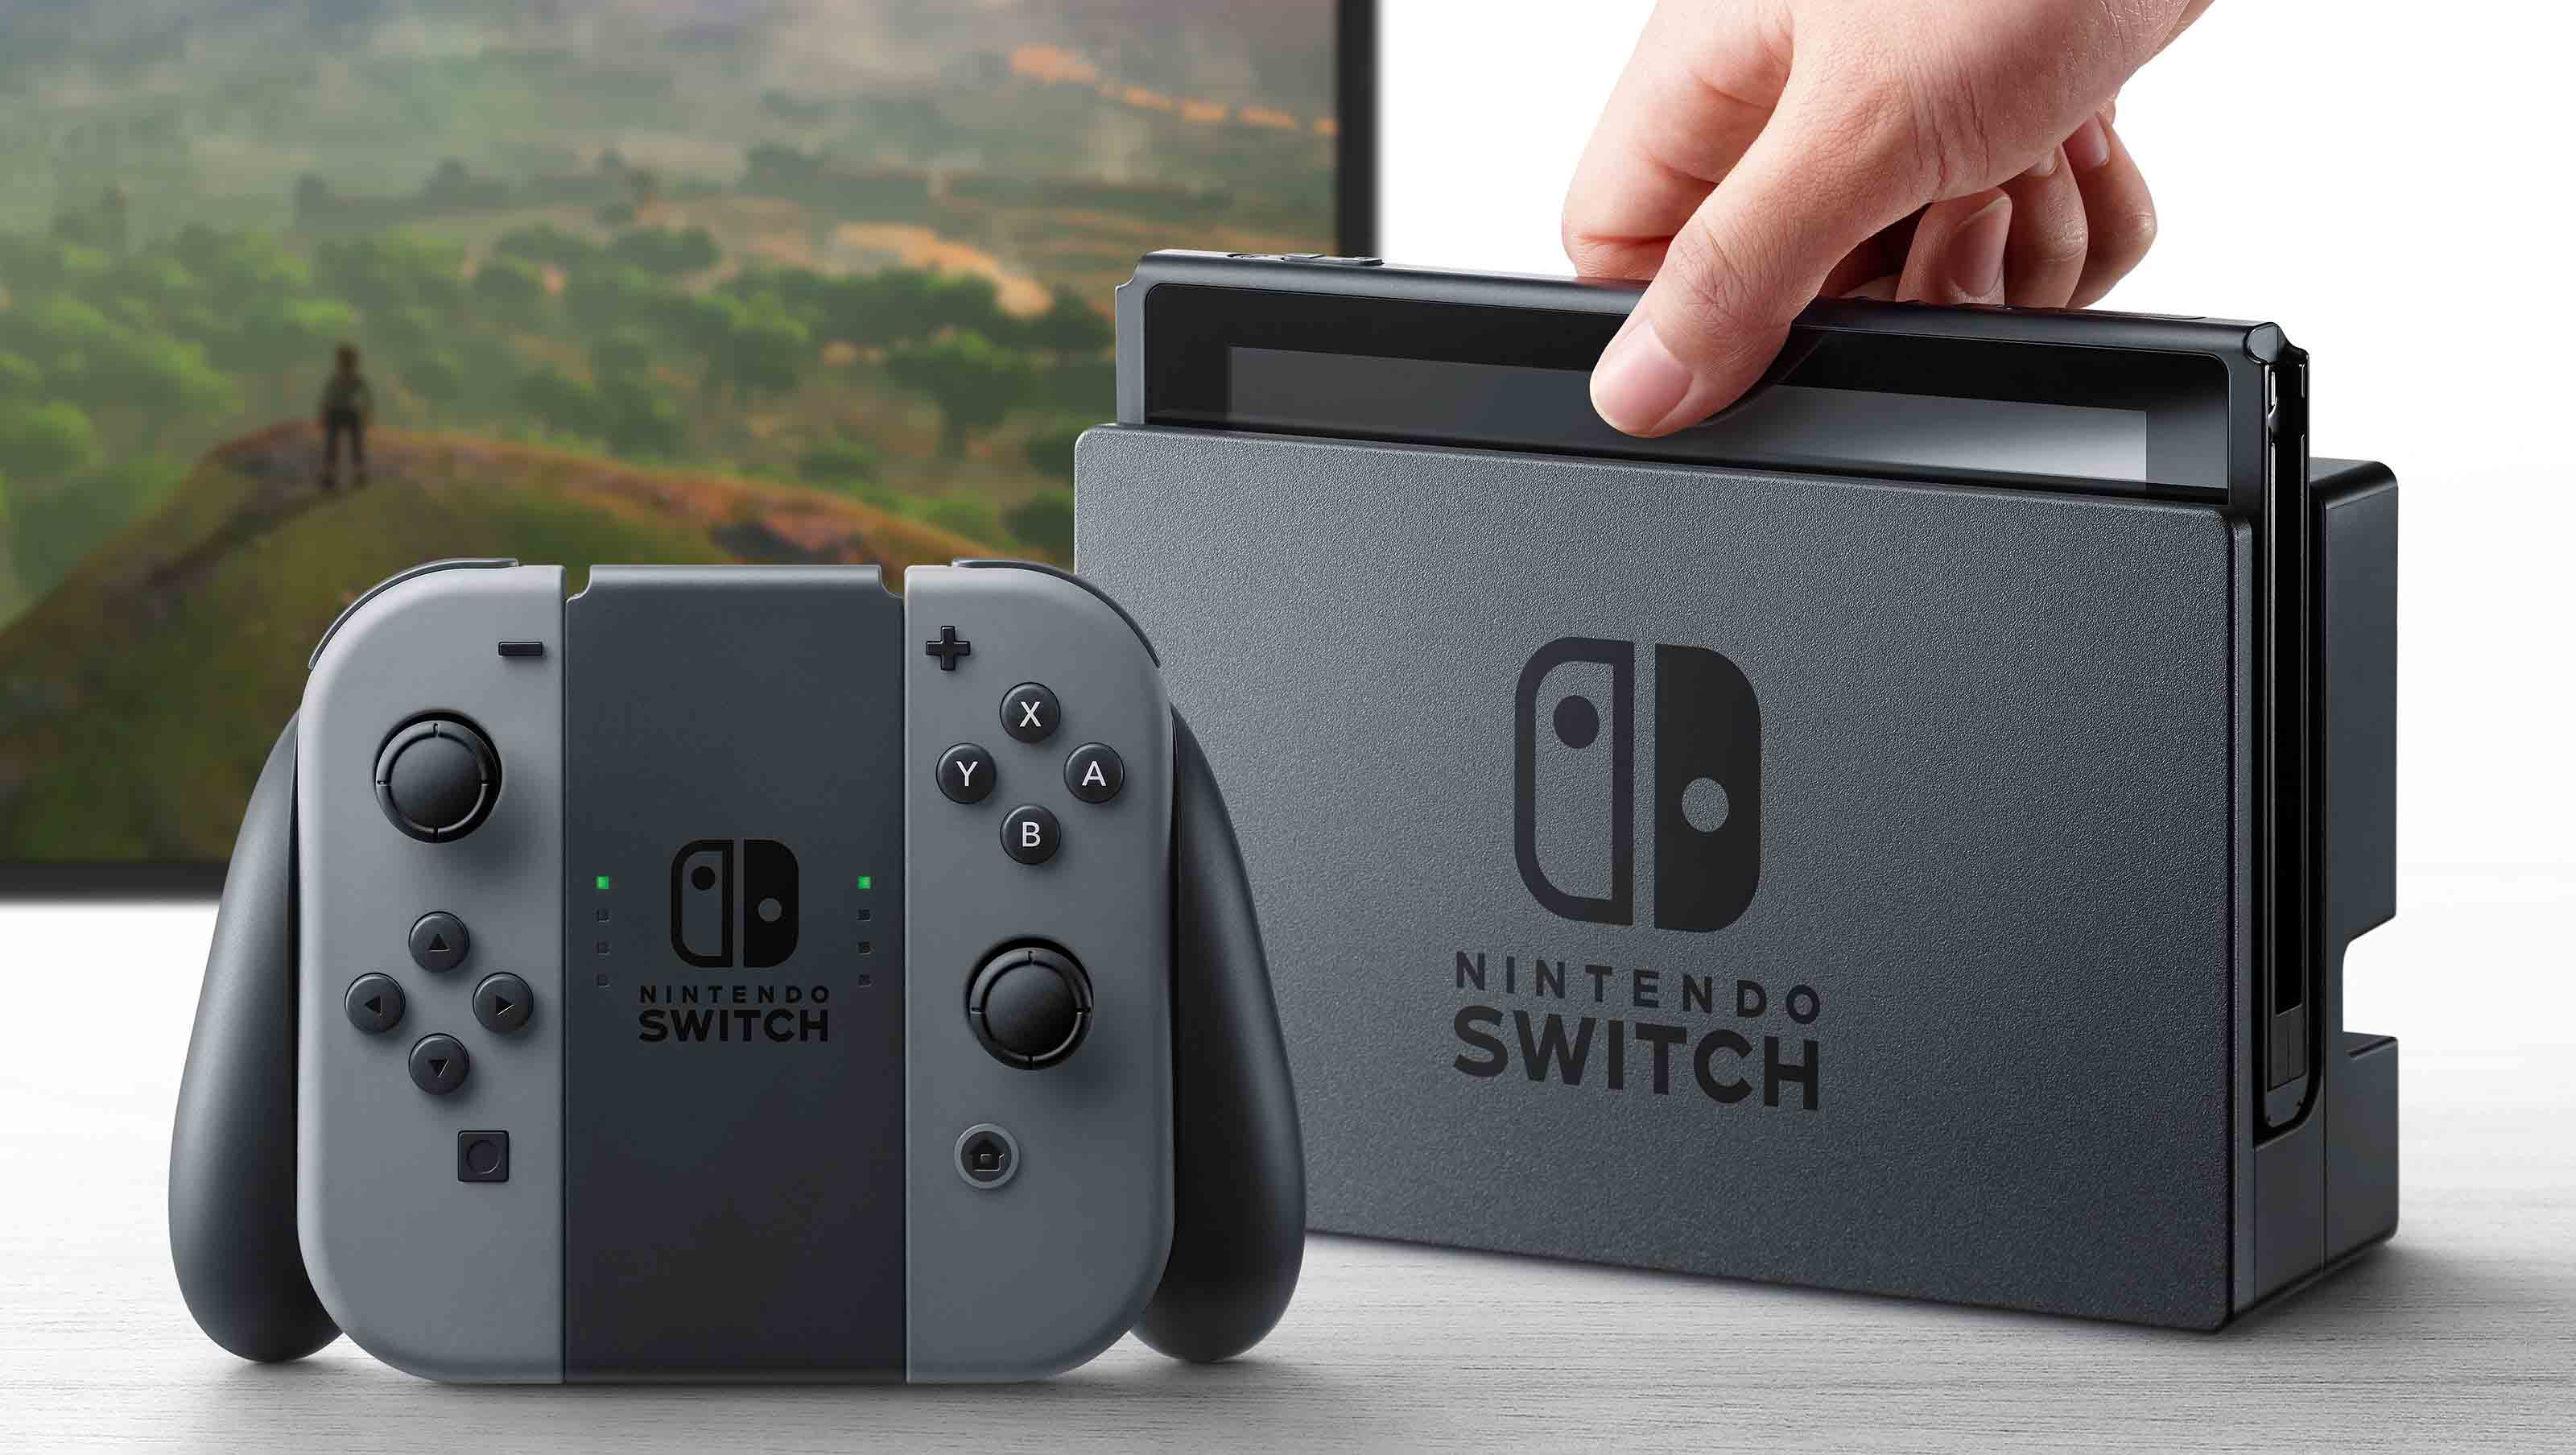 Nintendo Switch : simplicité, sobriété, praticité, la trinité qui résume les grandes lignes de la nouvelle console de Nintendo